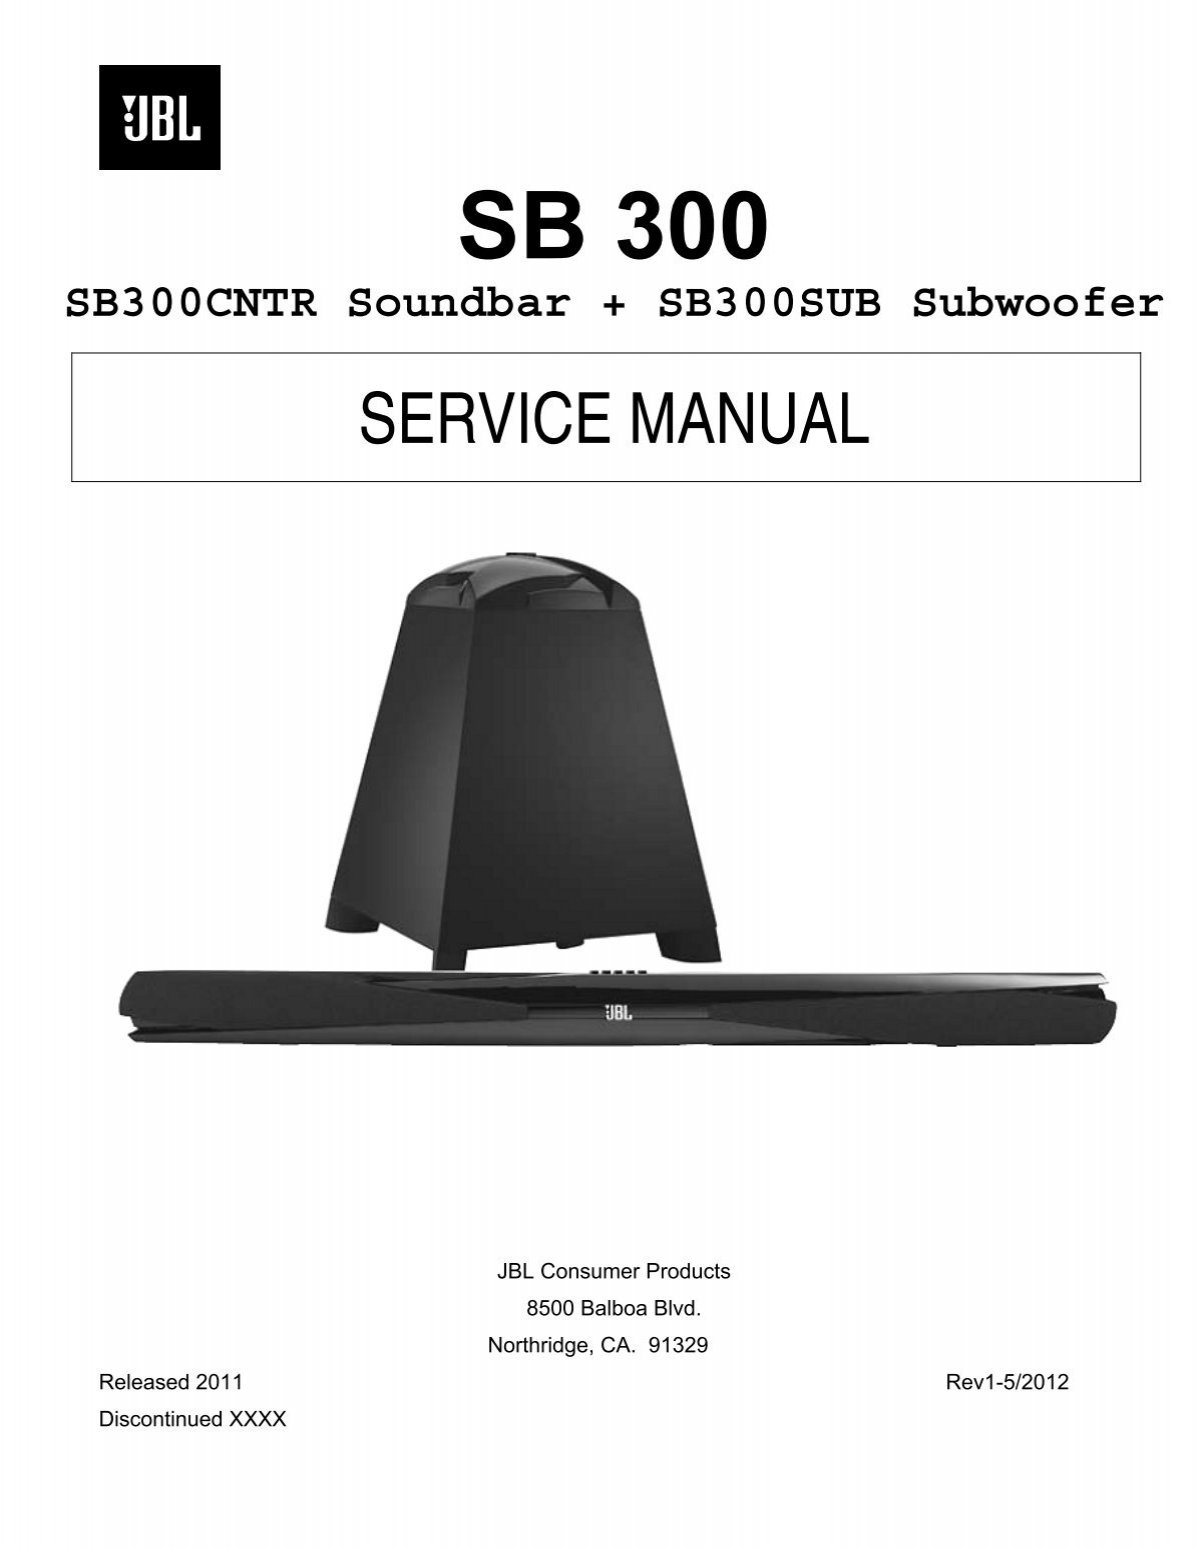 jbl sb300 price